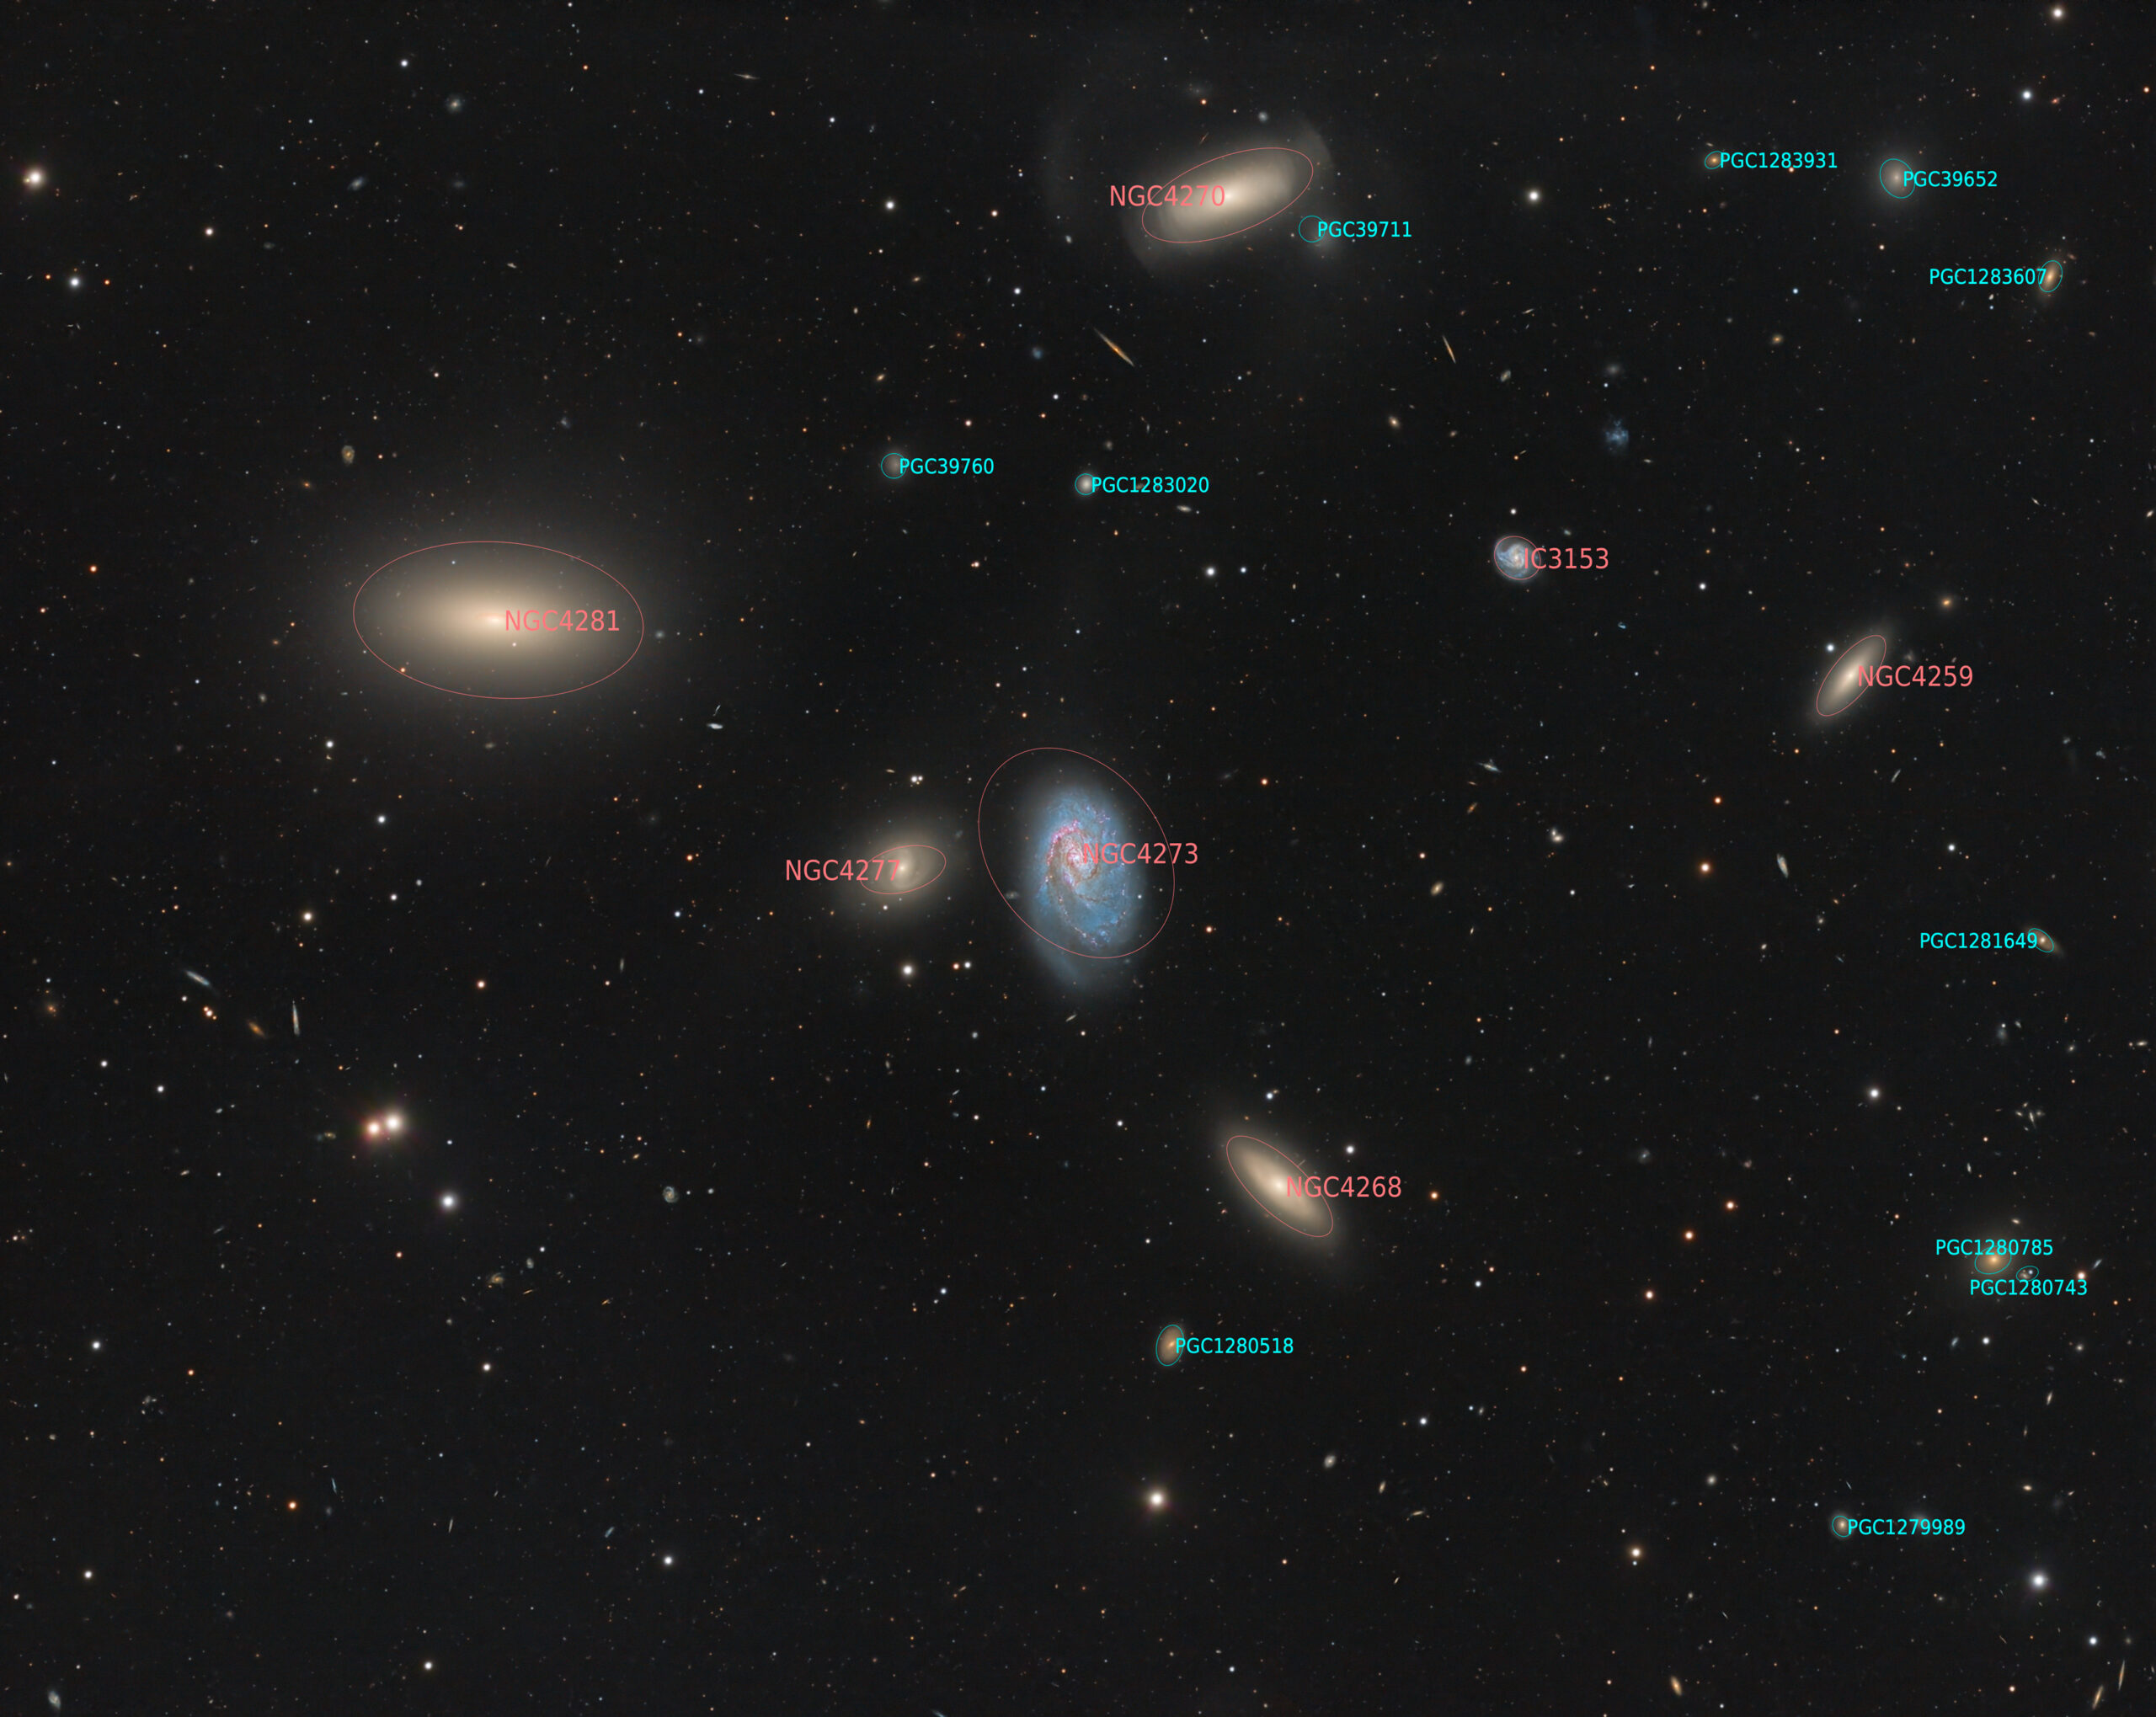 NGC 4273